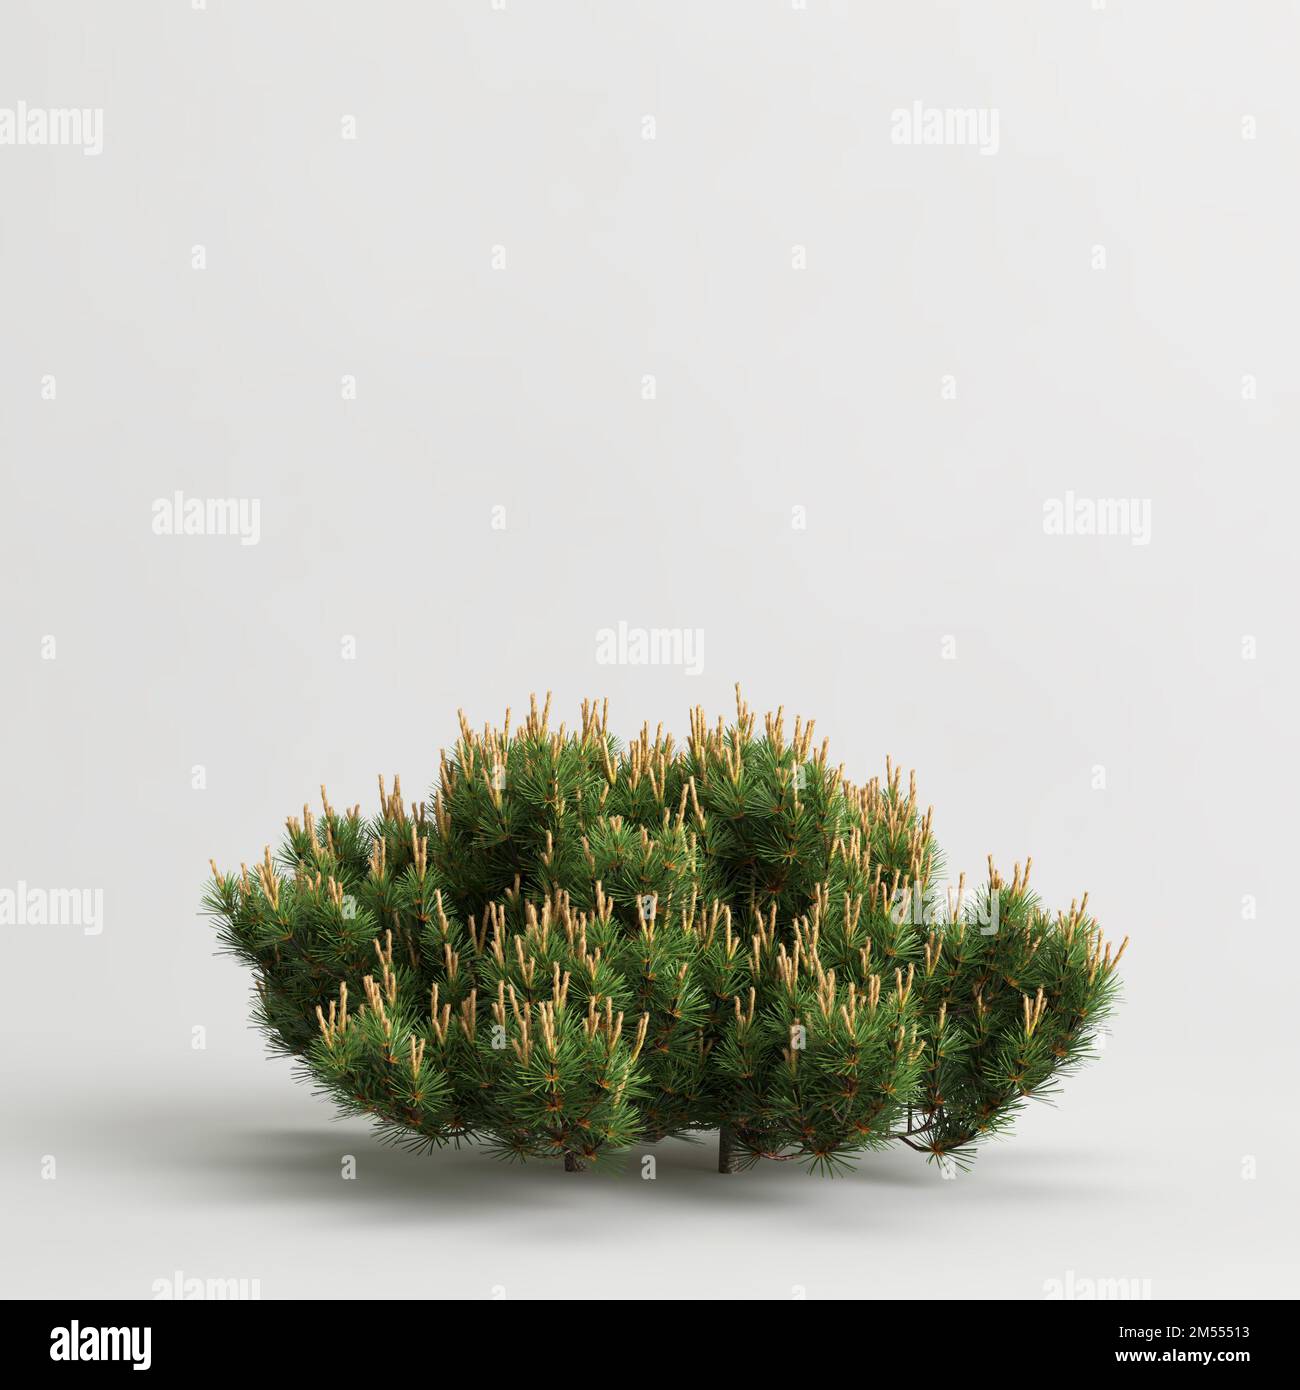 3d illustration of dwarf mugo pine bush isolated on white background Stock Photo